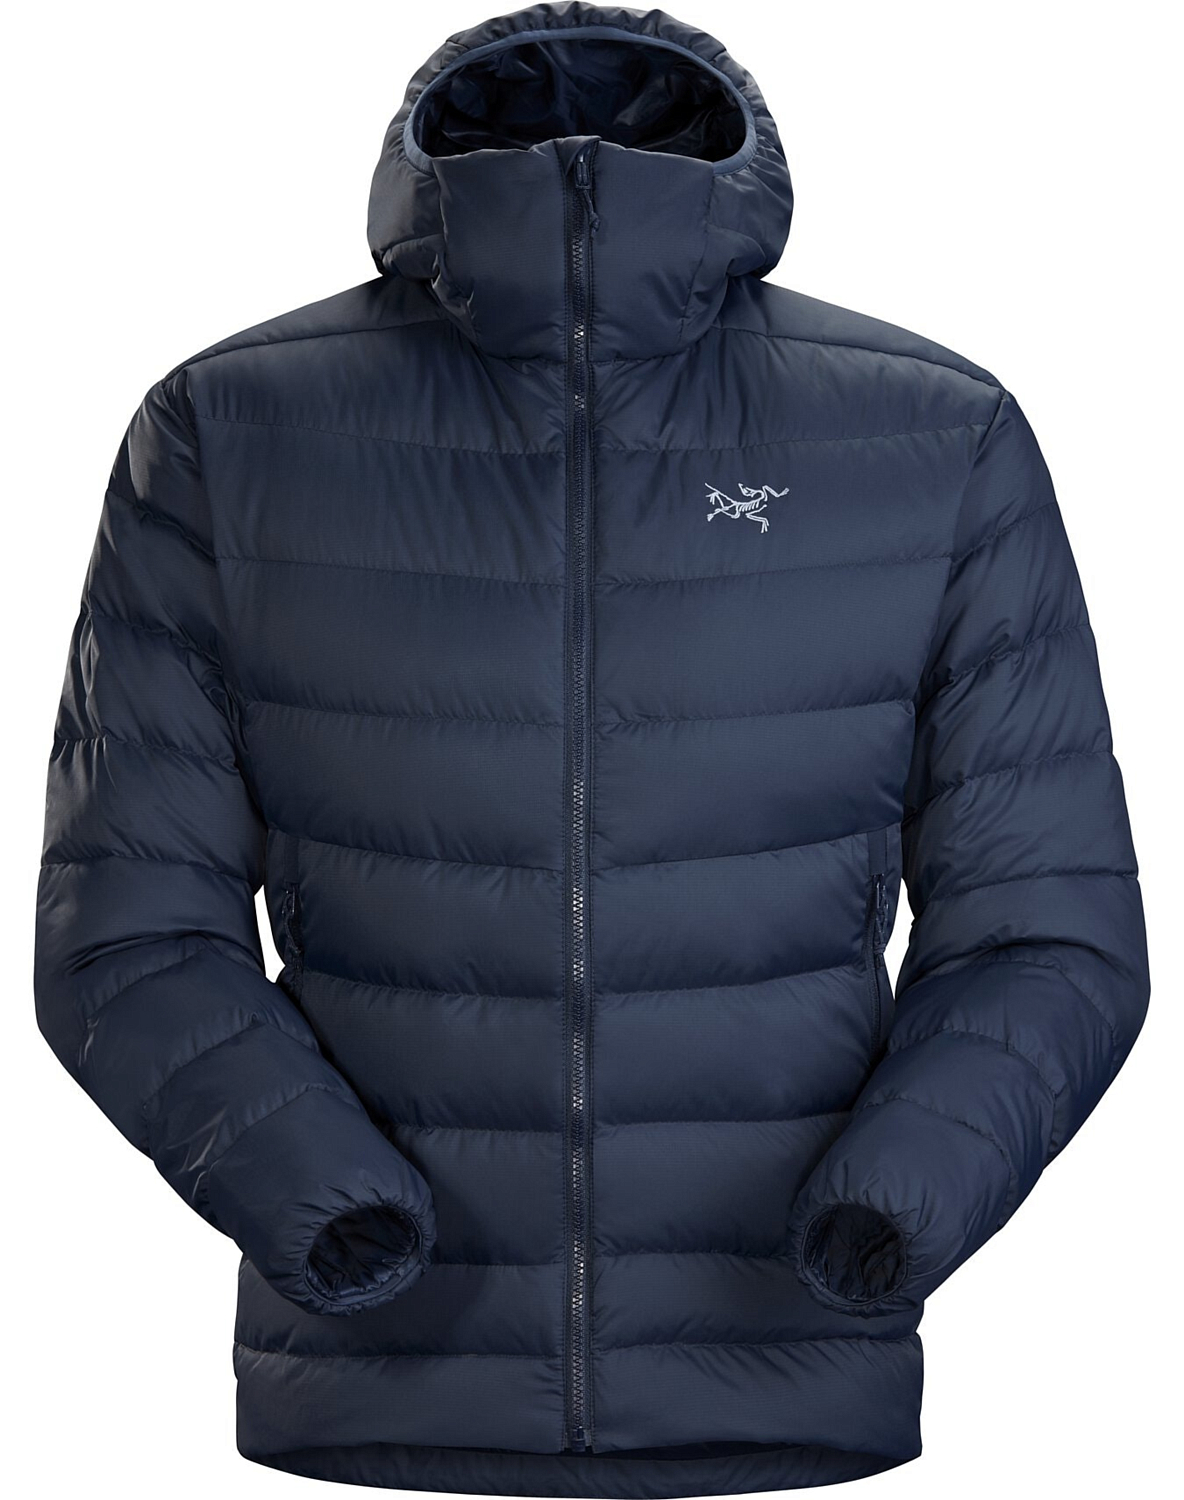 Куртка для активного отдыха Arcteryx 2020-21 Thorium ar Hoody Men's Kingfisher